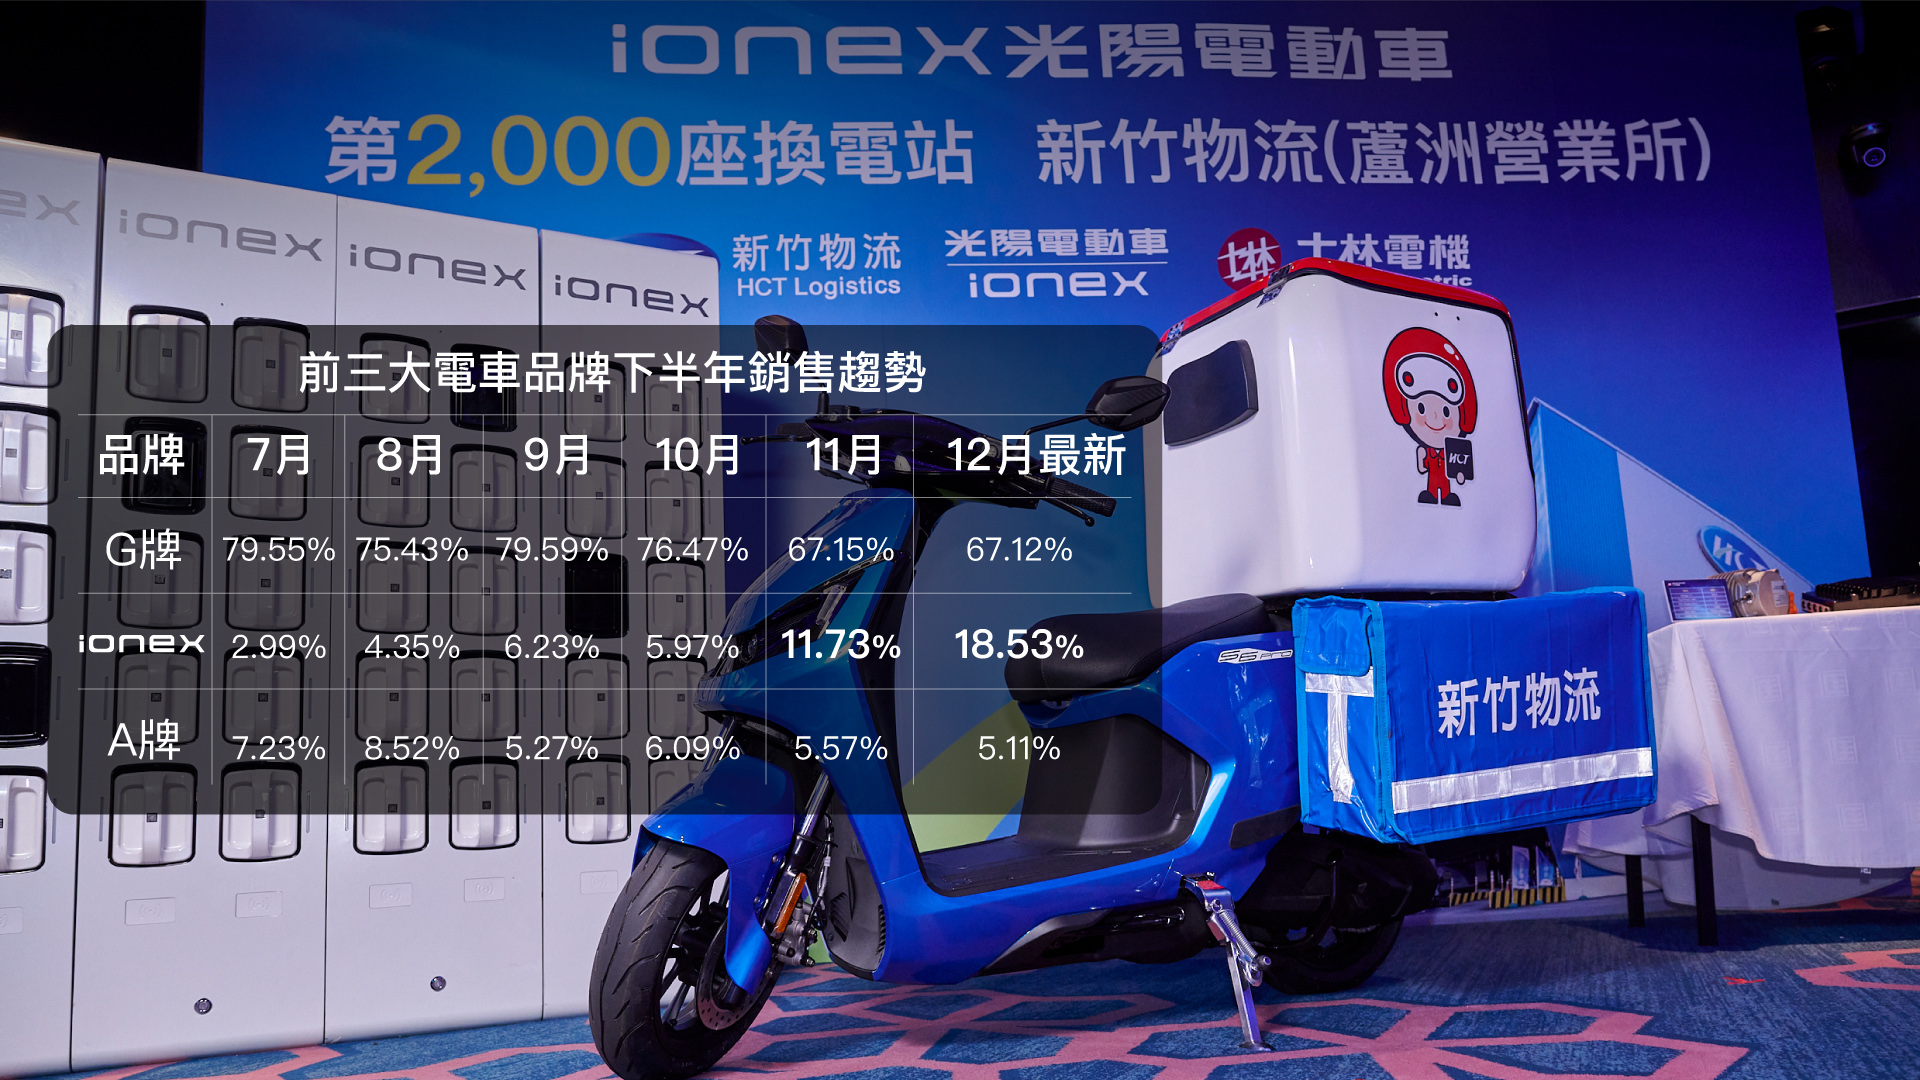 Ionex 宣布 2,000 座換電站達標 瞄準 2024 電車冠軍 @3C 達人廖阿輝